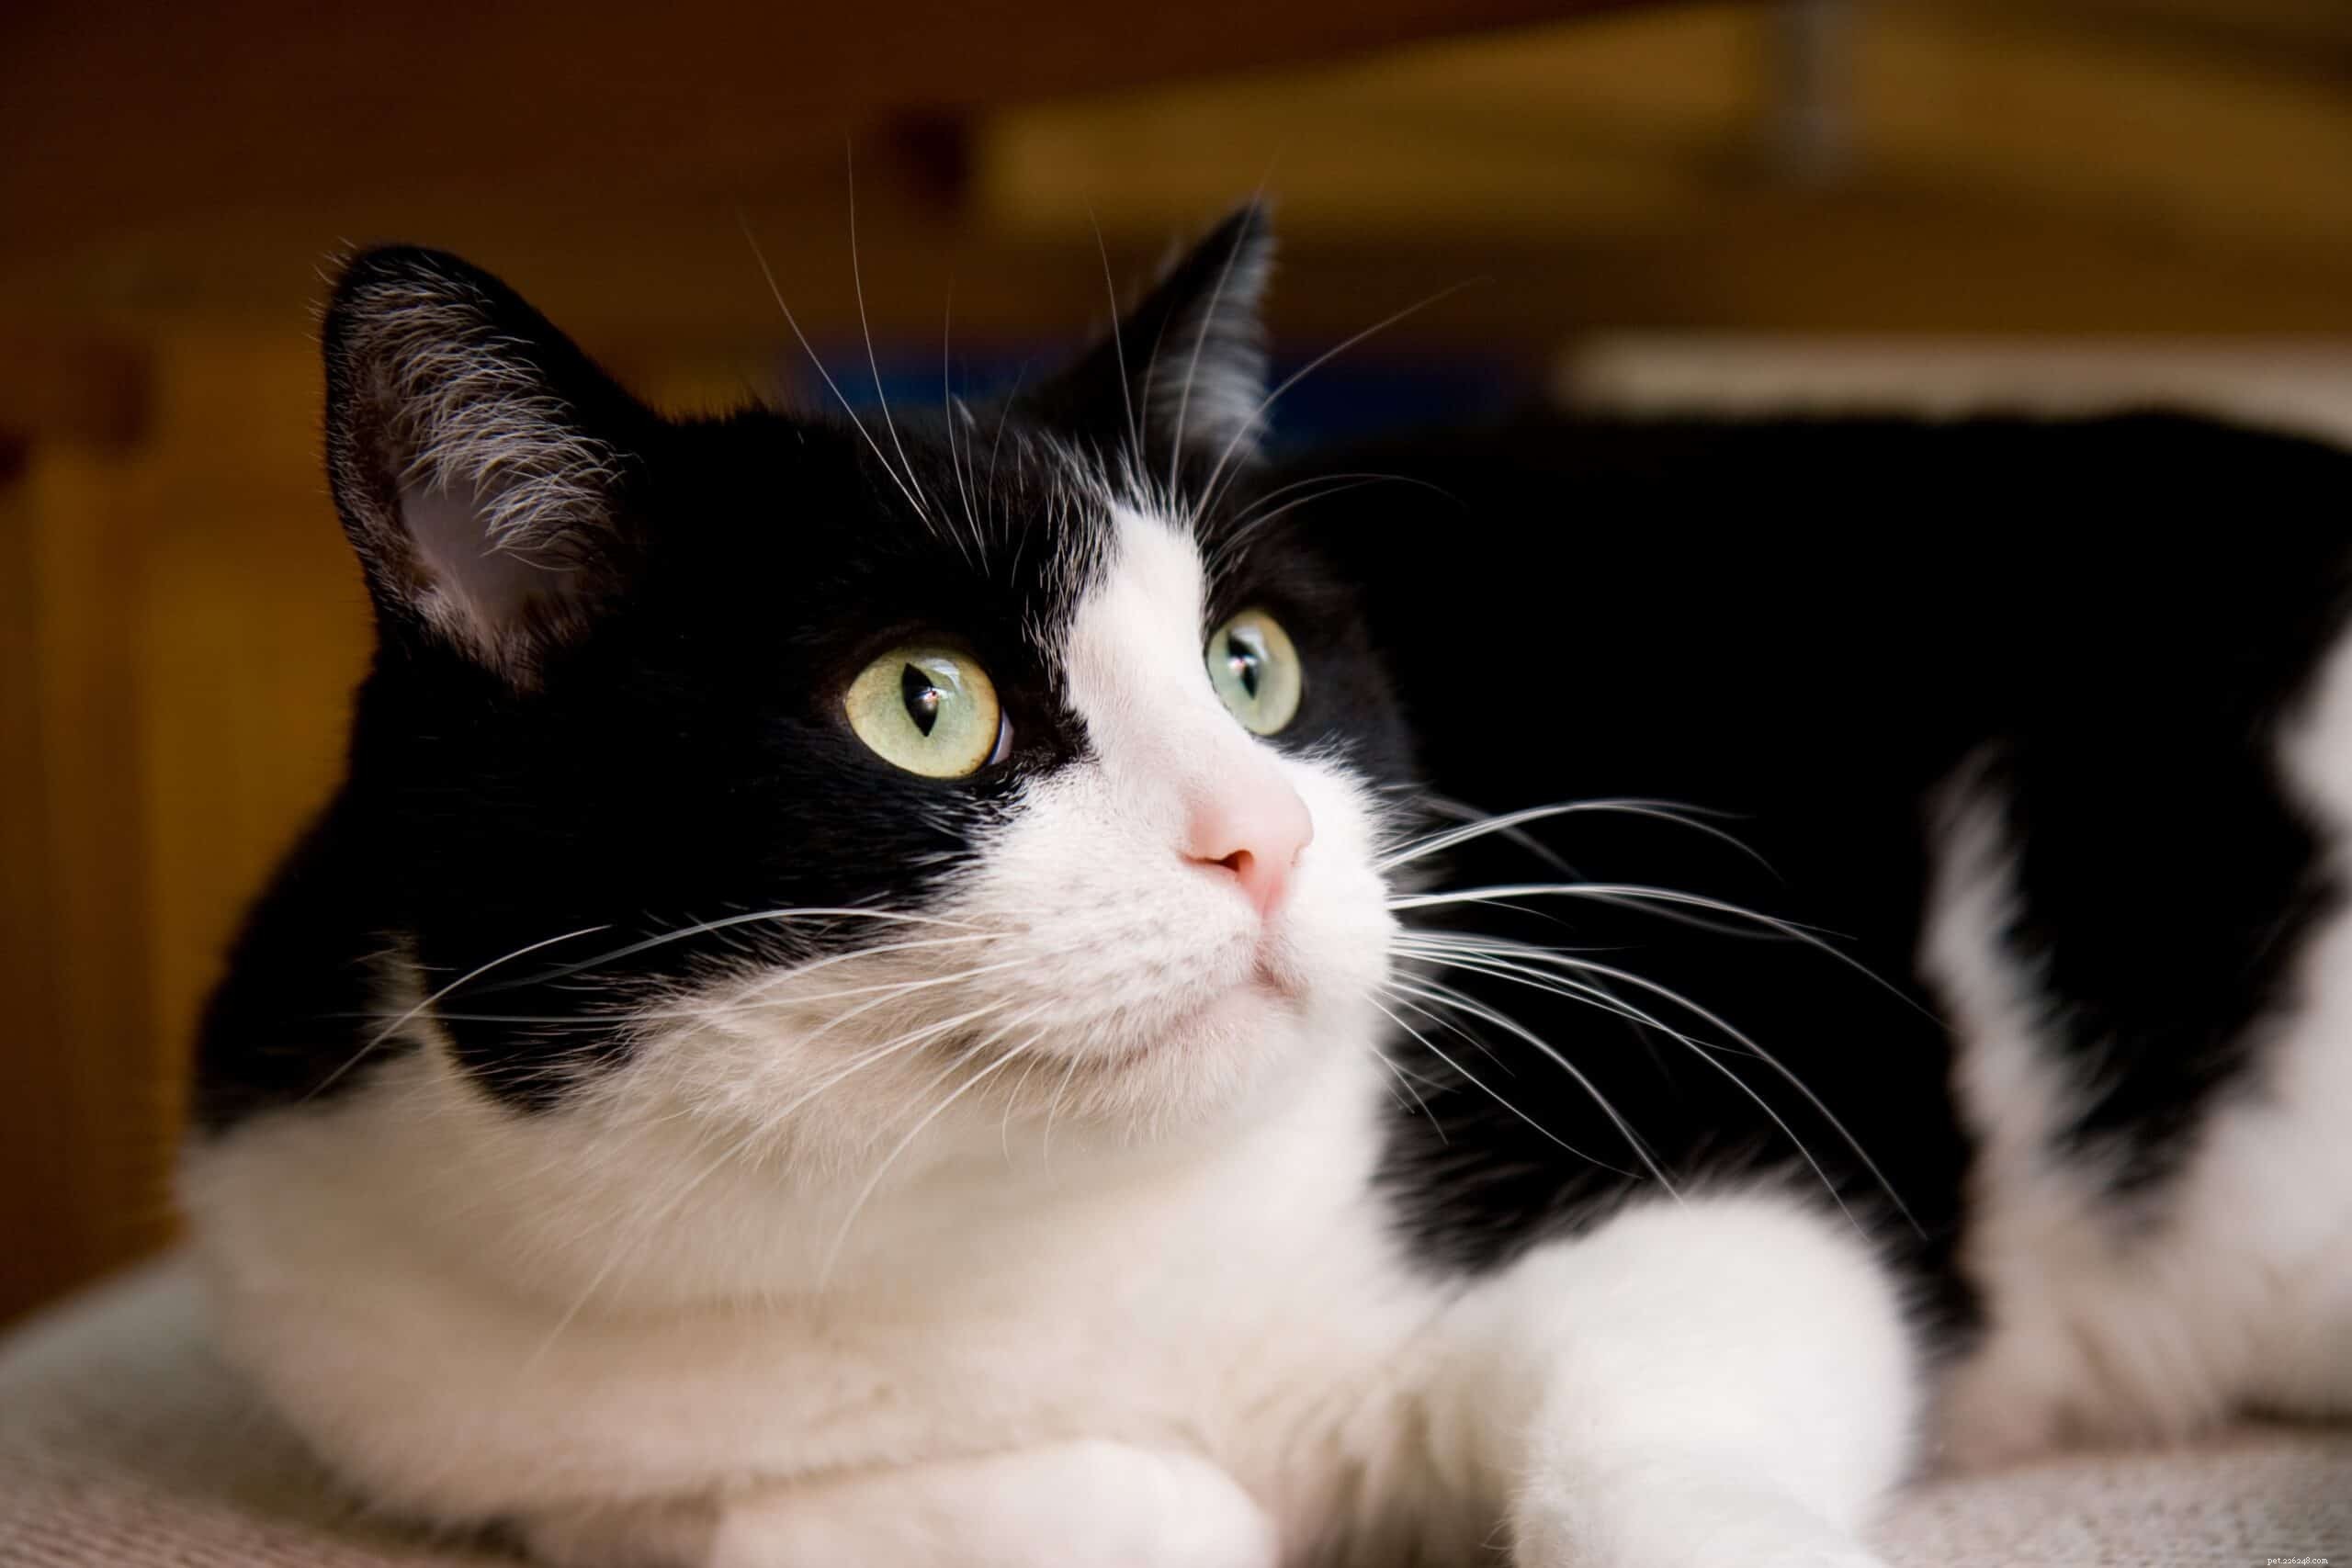 Waarom zijn katten bang voor harde geluiden?